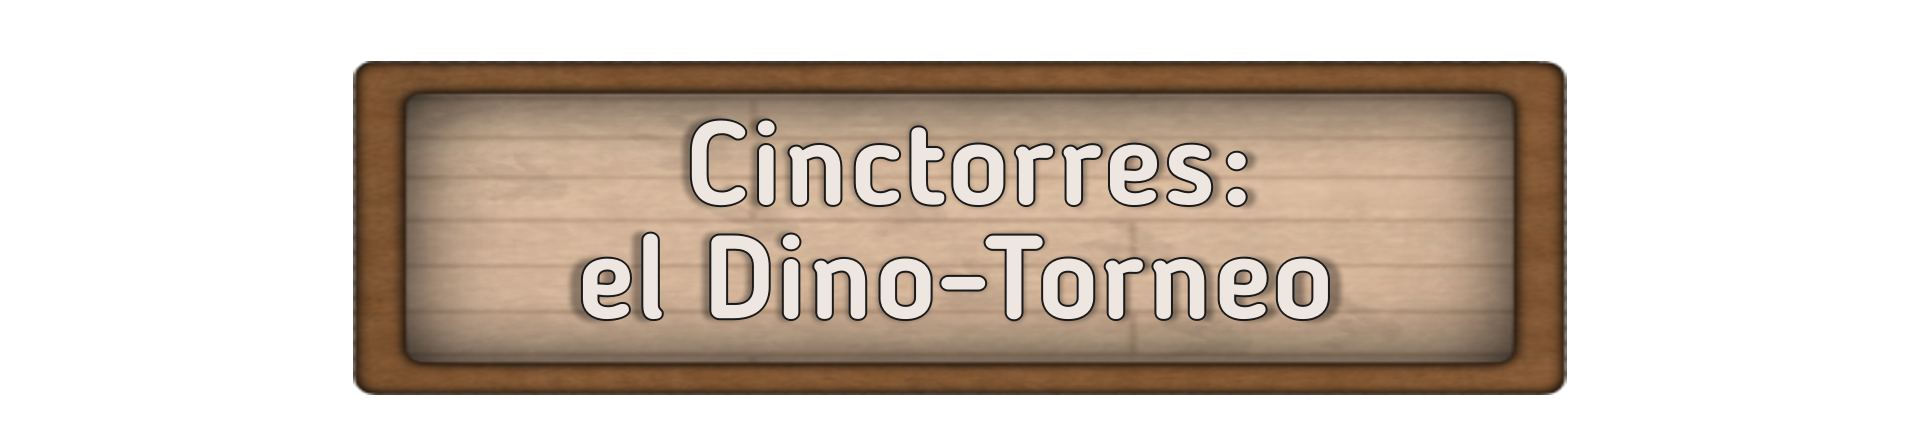 Cinctorres: El Dino-Torneo